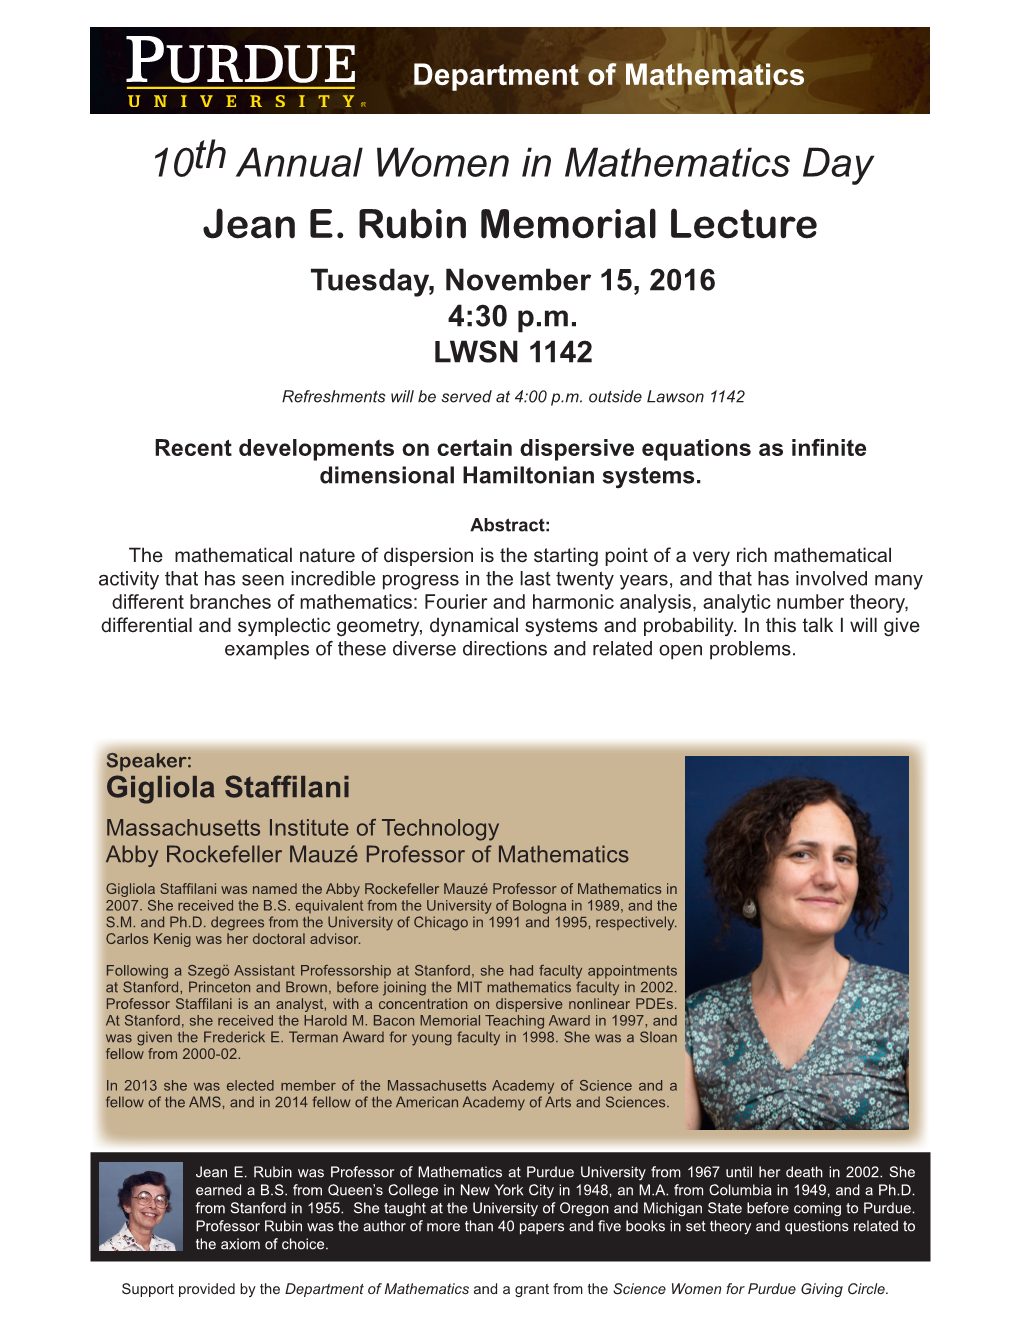 Jean E. Rubin Memorial Lecture 10Th Annual Women in Mathematics